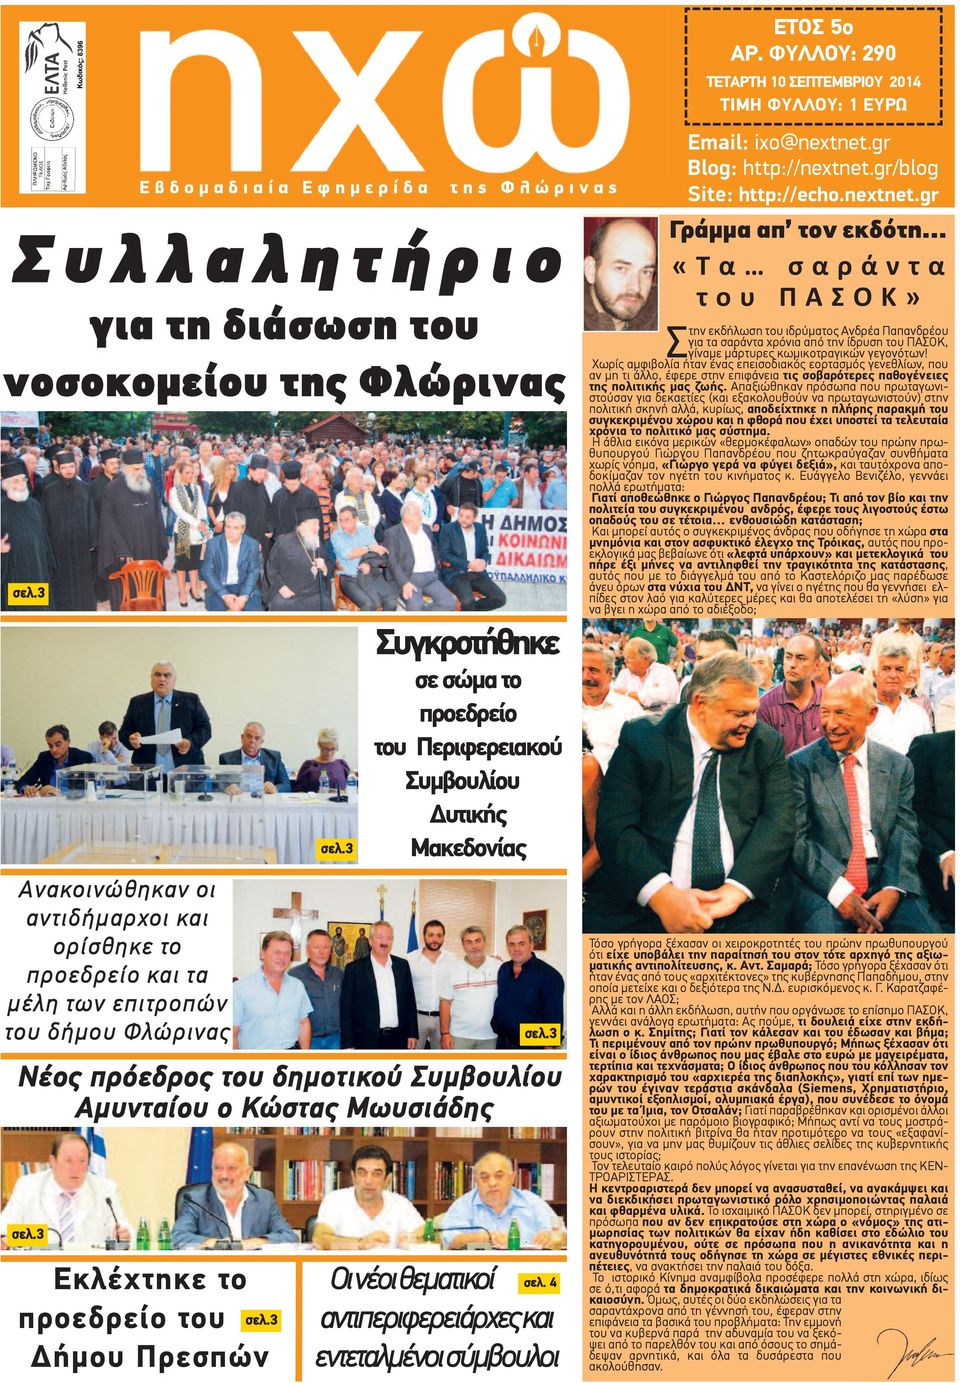 3 Συγκροτήθηκε σε σώμα το προεδρείο του Περιφερειακού Συμβουλίου Δυτικής Μακεδονίας Νέος πρόεδρος του δημοτικού Συμβουλίου Αμυνταίου ο Κώστας Μωυσιάδης σελ.3 σελ.